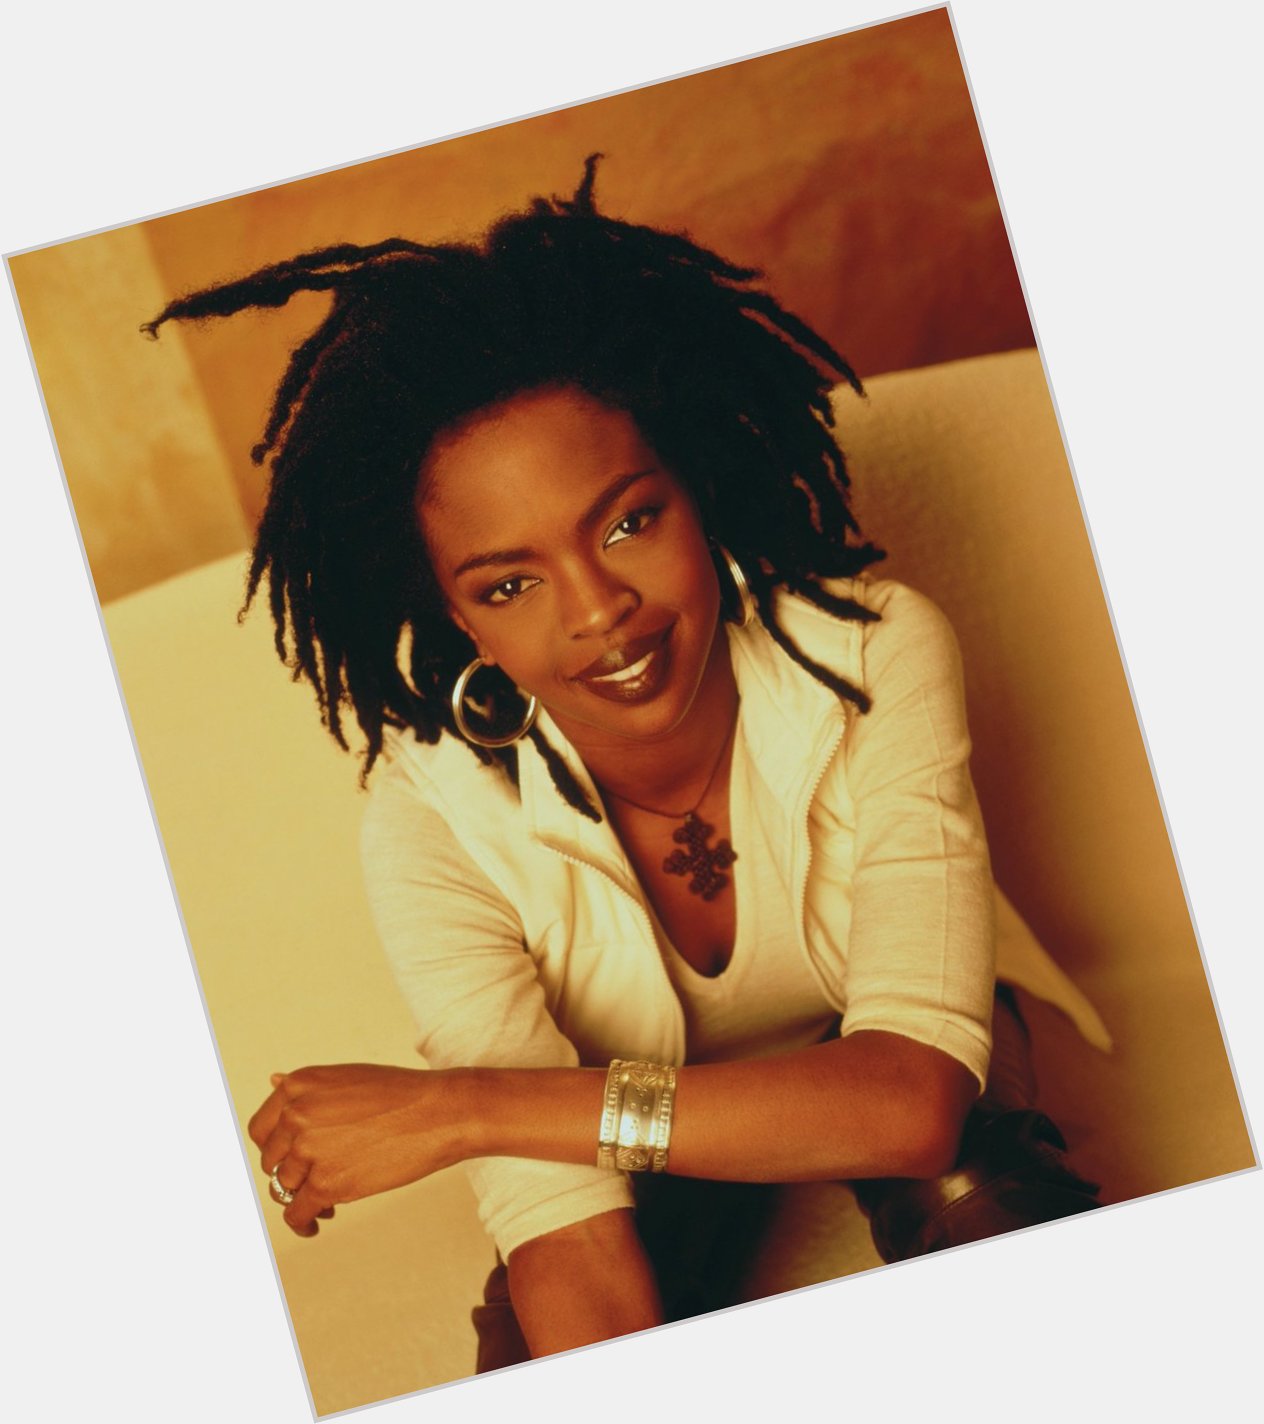 Happy Birthday, Lauryn Hill

Share your favorite Lauryn tracks or lyrics 